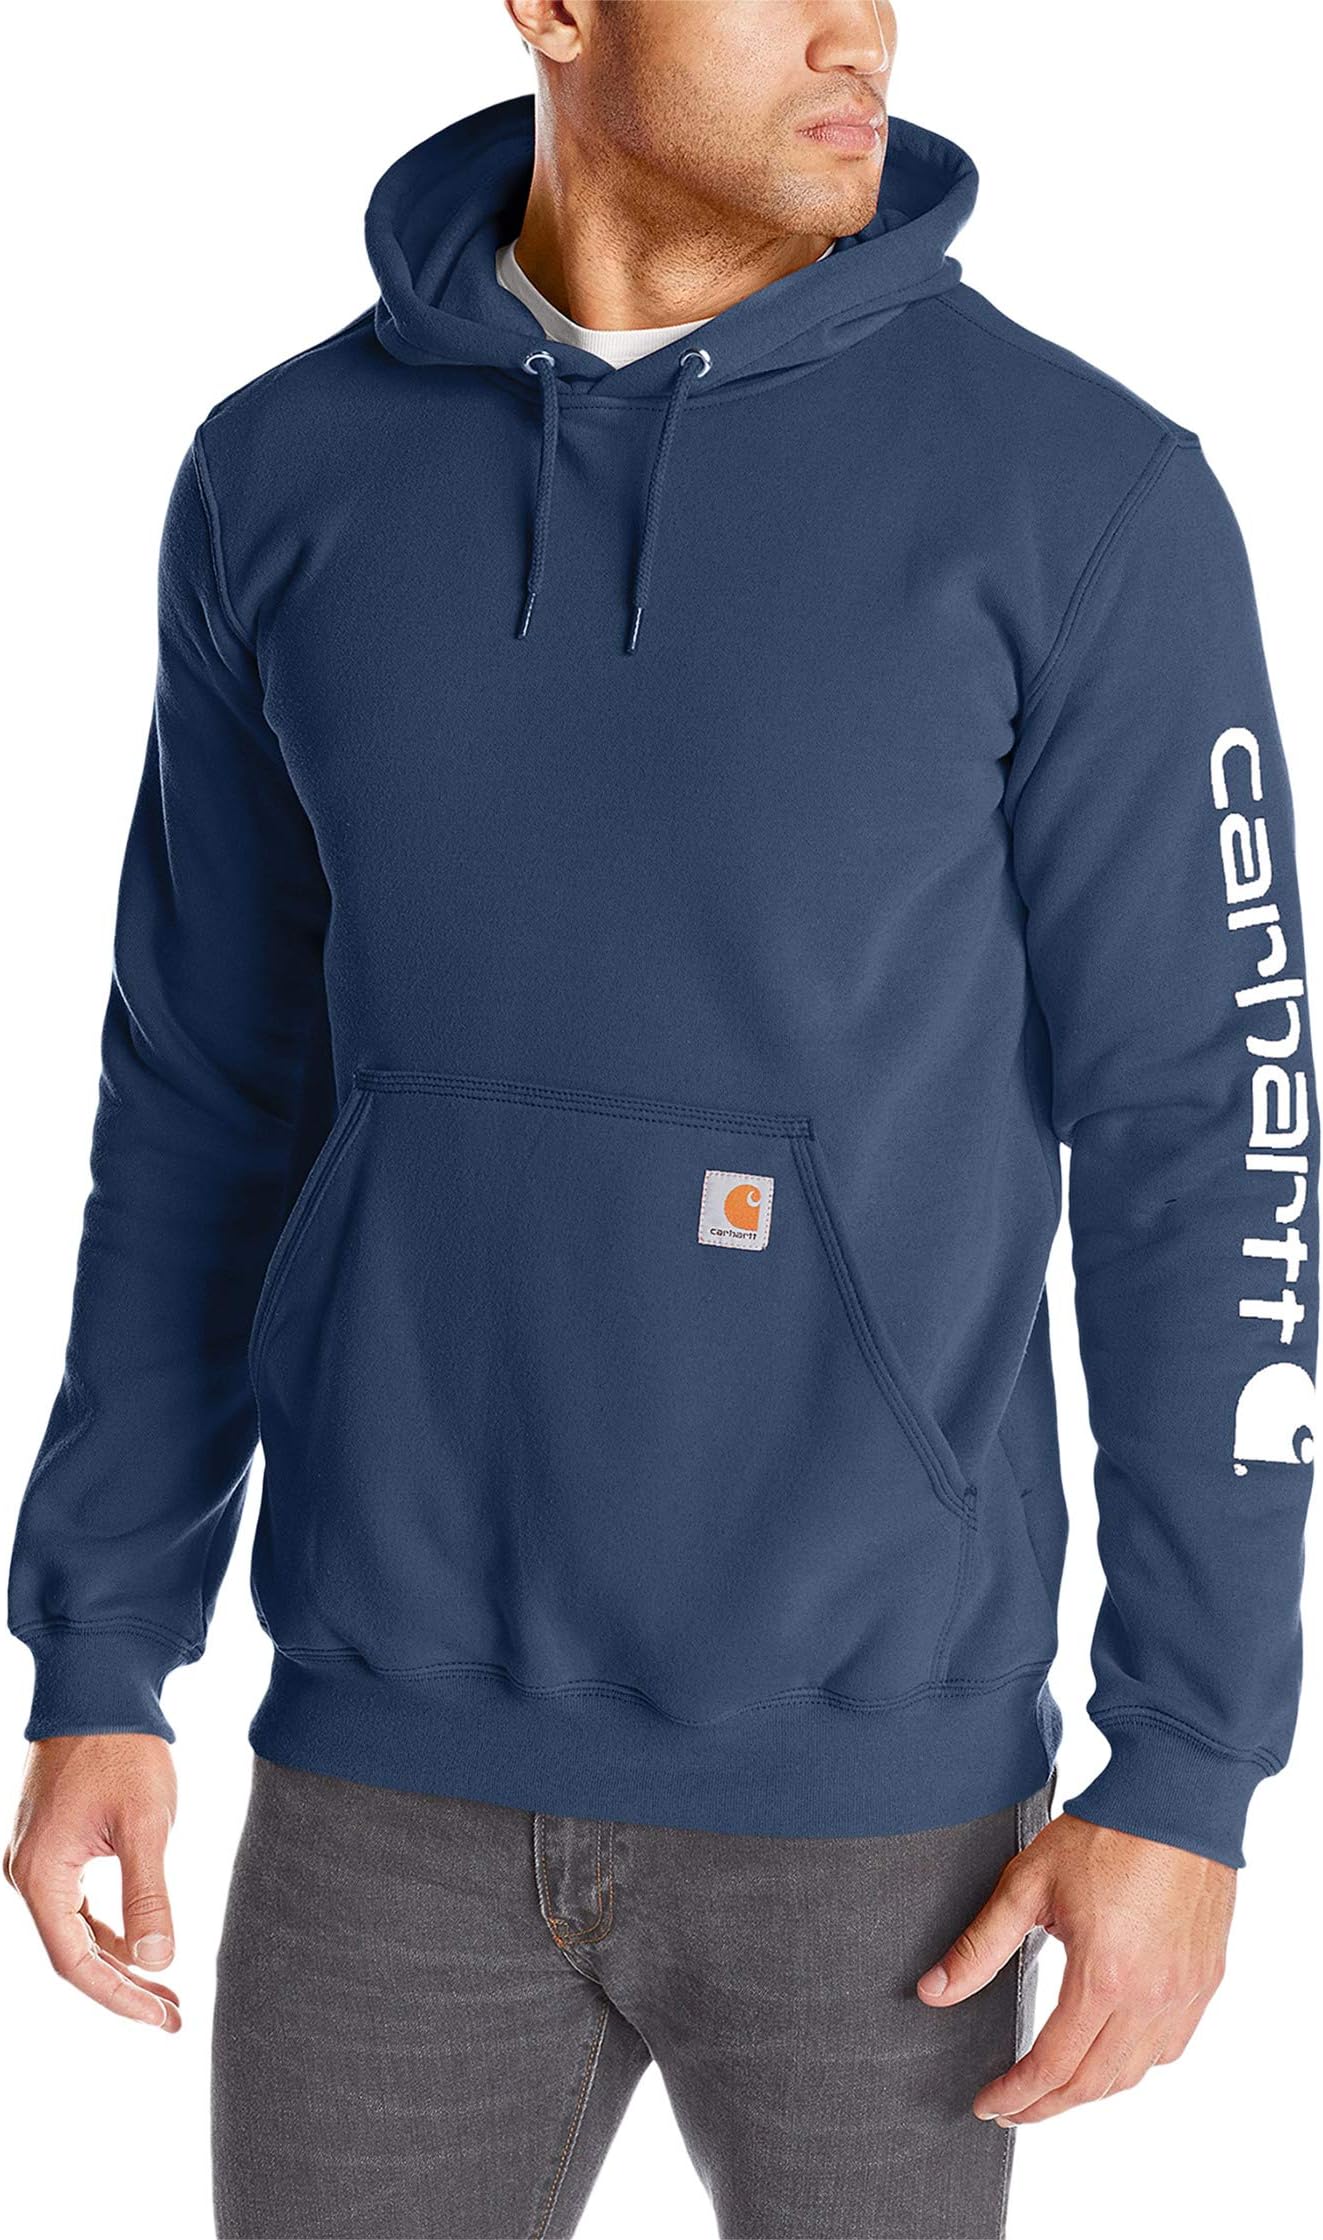 Толстовка средней плотности с капюшоном и фирменным логотипом на рукавах Carhartt, цвет New Navy